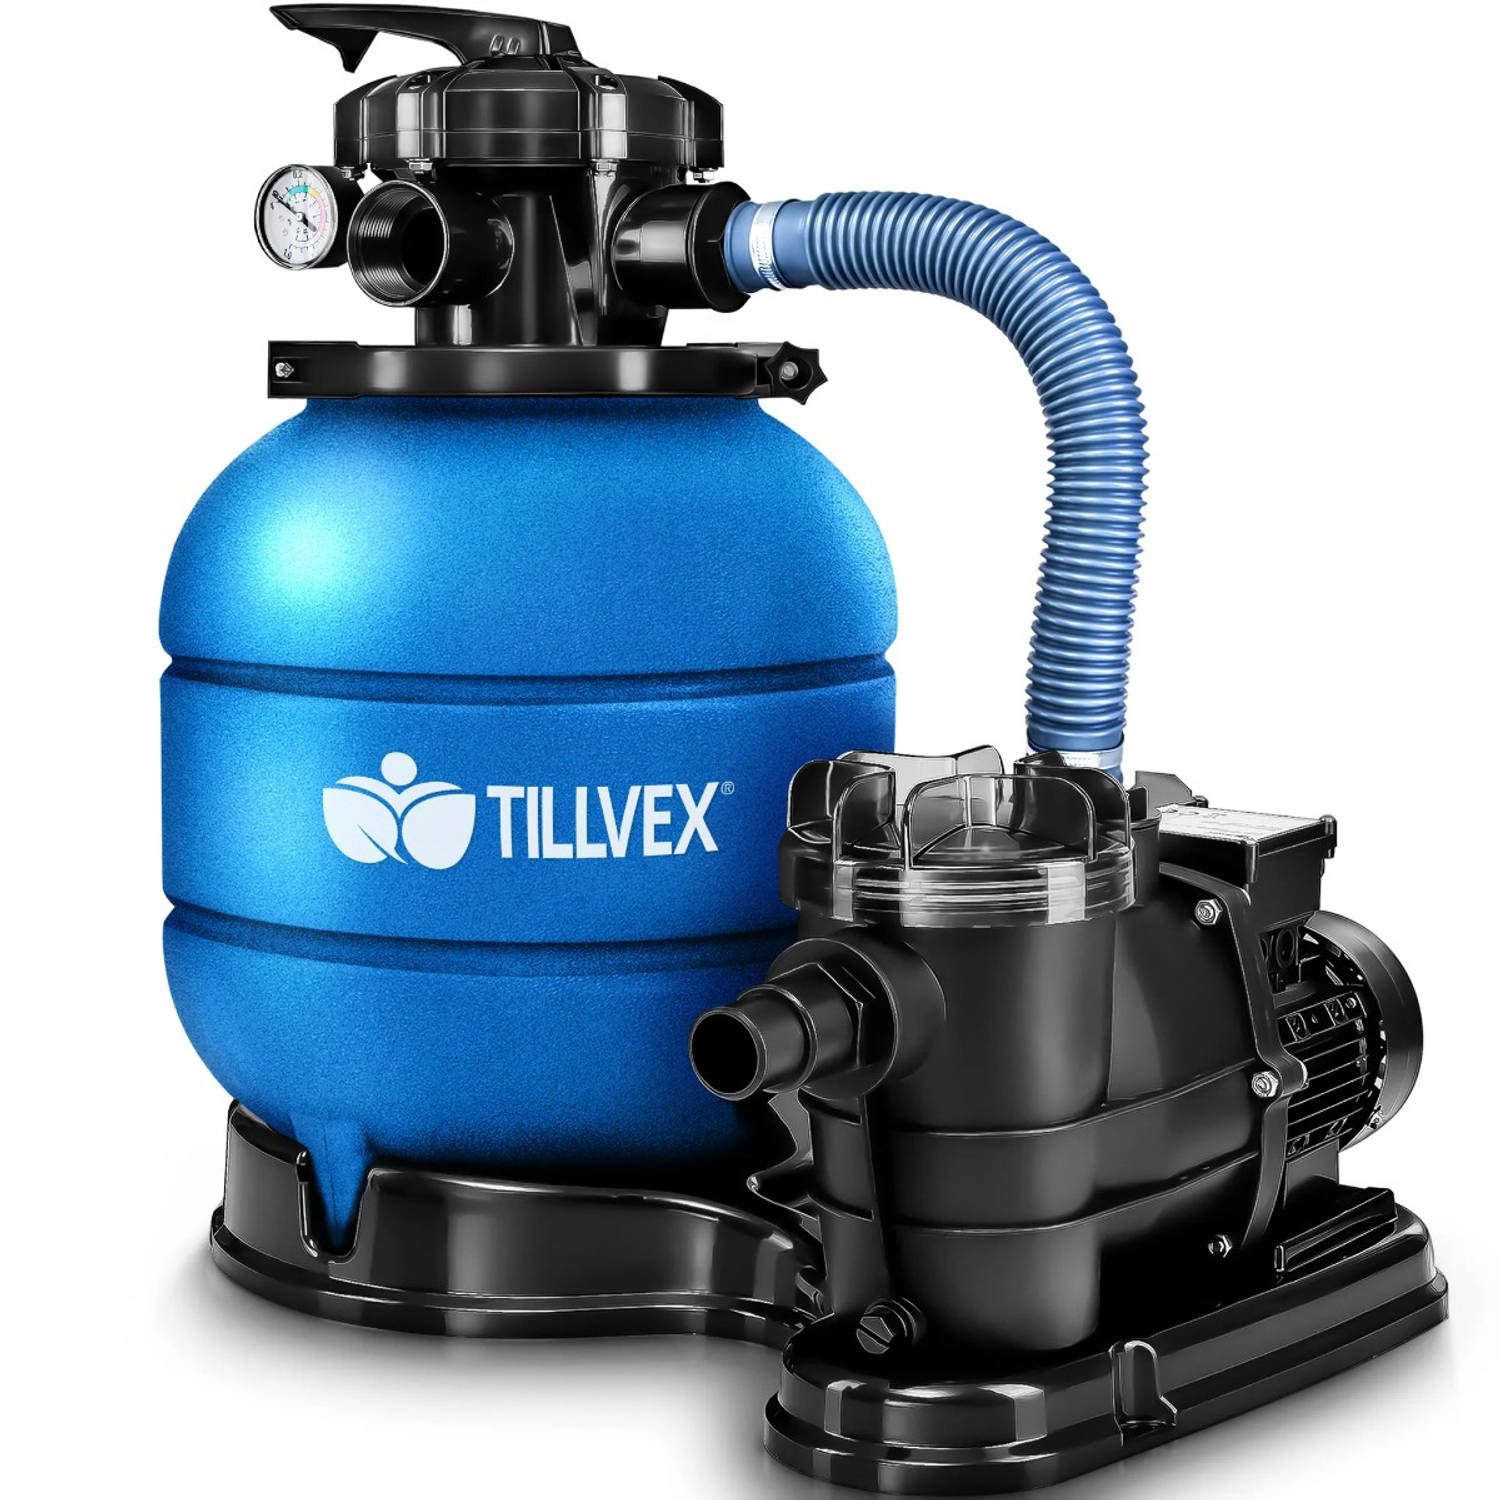 Tillvex zandfiltersysteem blauw-met pomp -filtersysteem- zandfilterfilter- boiler- zwembadfilterpomp